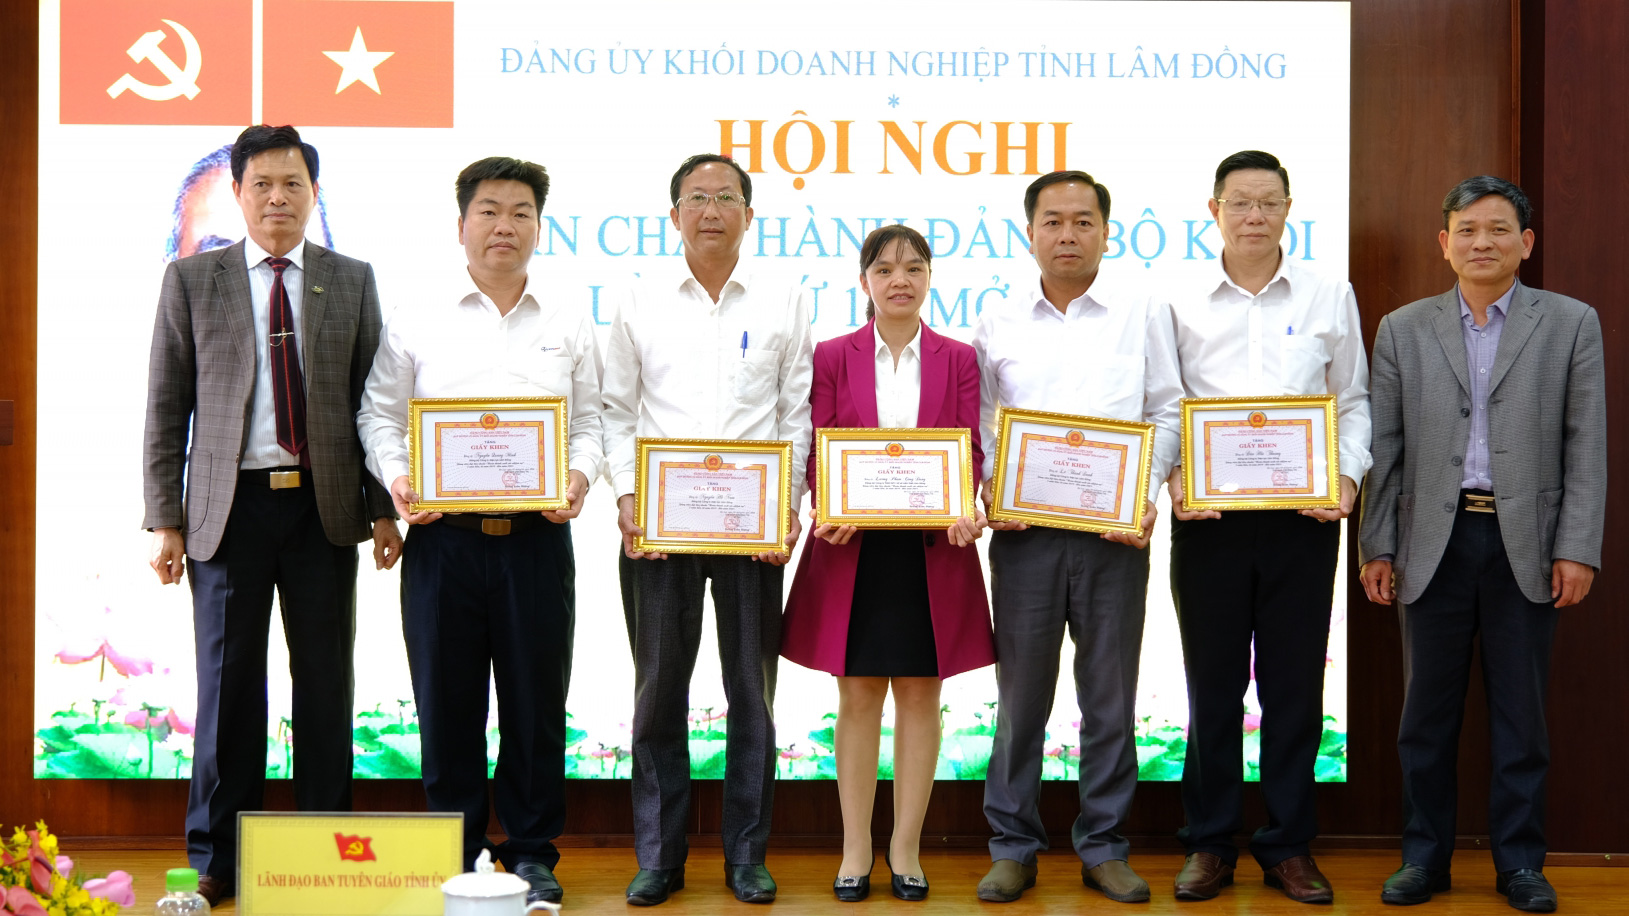 Đảng ủy Khối Doanh nghiệp tỉnh tặng giấy khen cho các đảng viên hoàn thành xuất sắc nhiệm vụ 5 năm liên tục 2019 - 2023